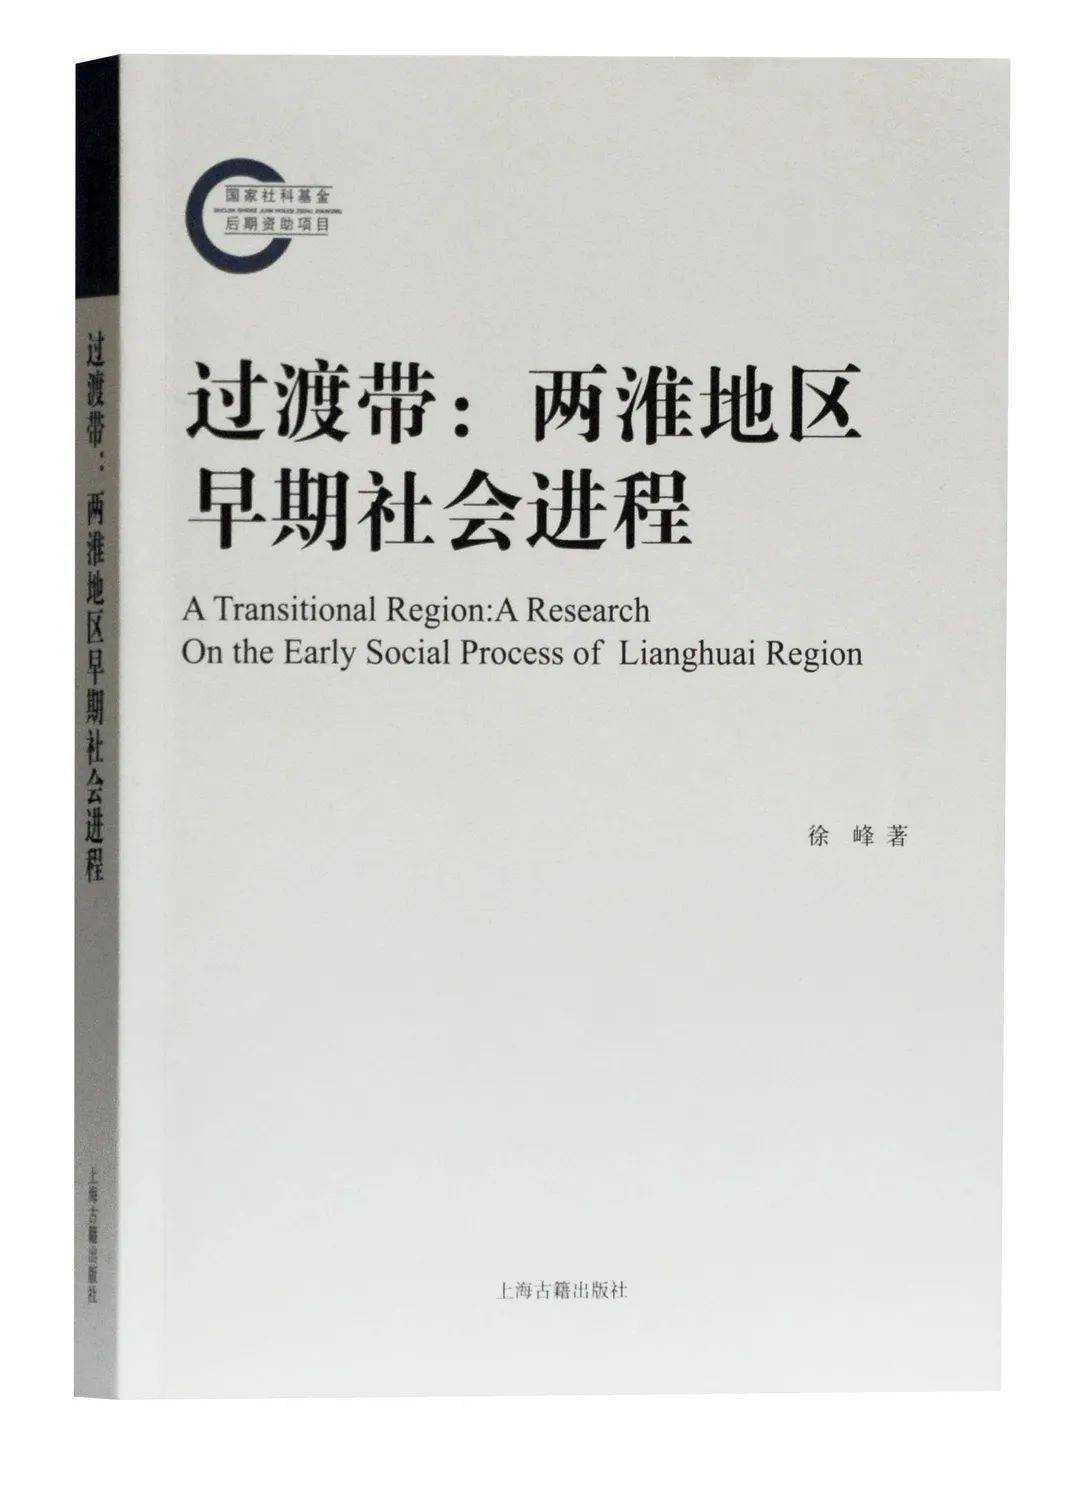 《过渡带:两淮地区早期社会进程》出版